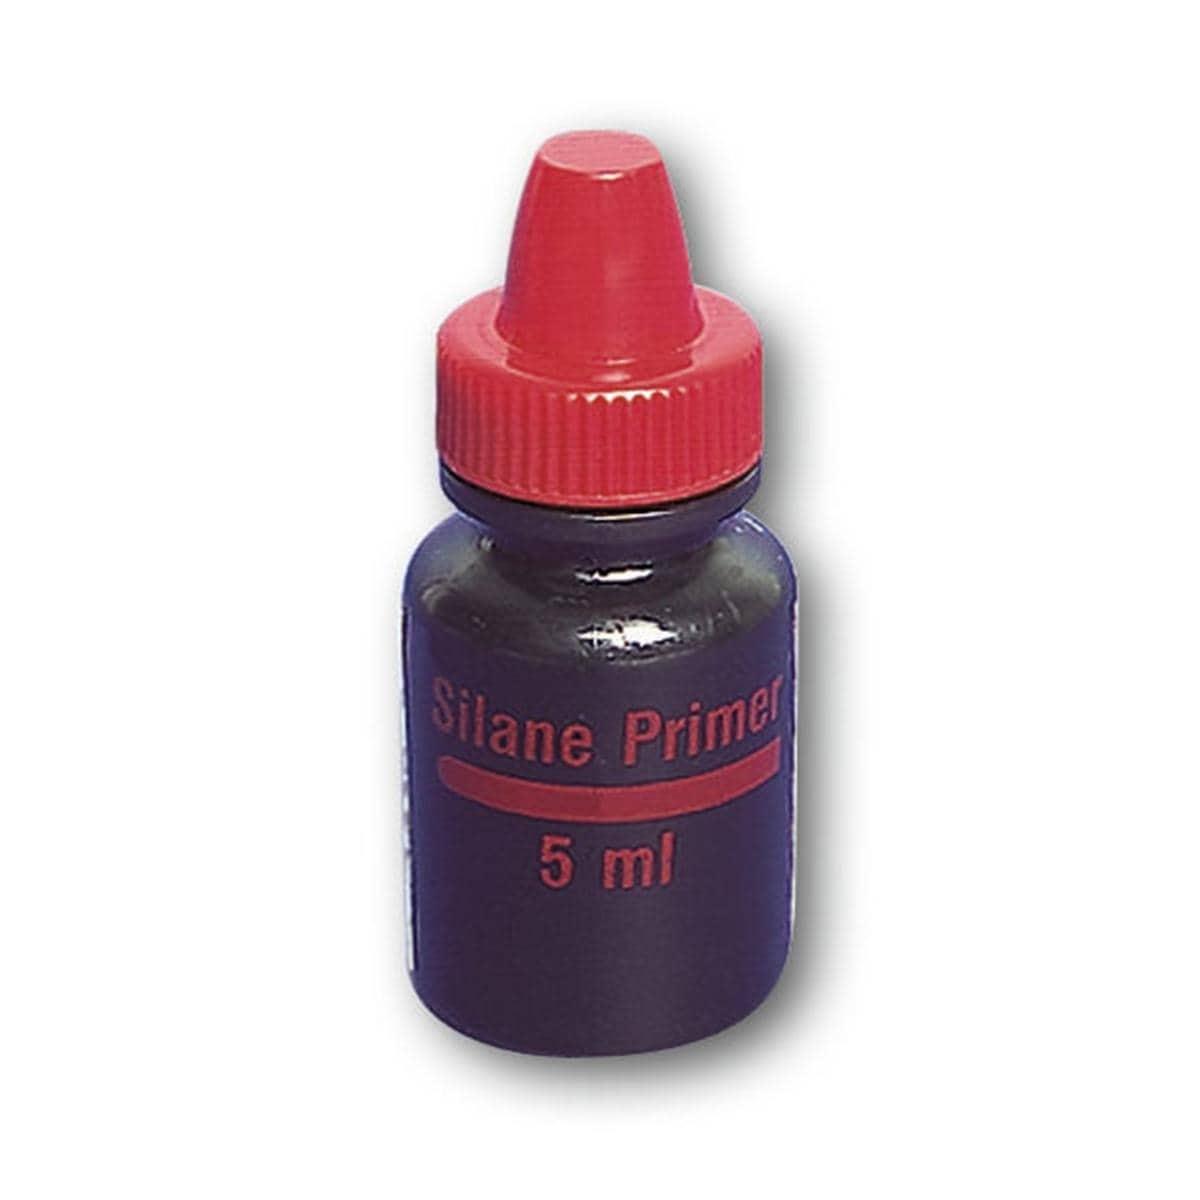 Silane Primer - Flacon, 5 ml